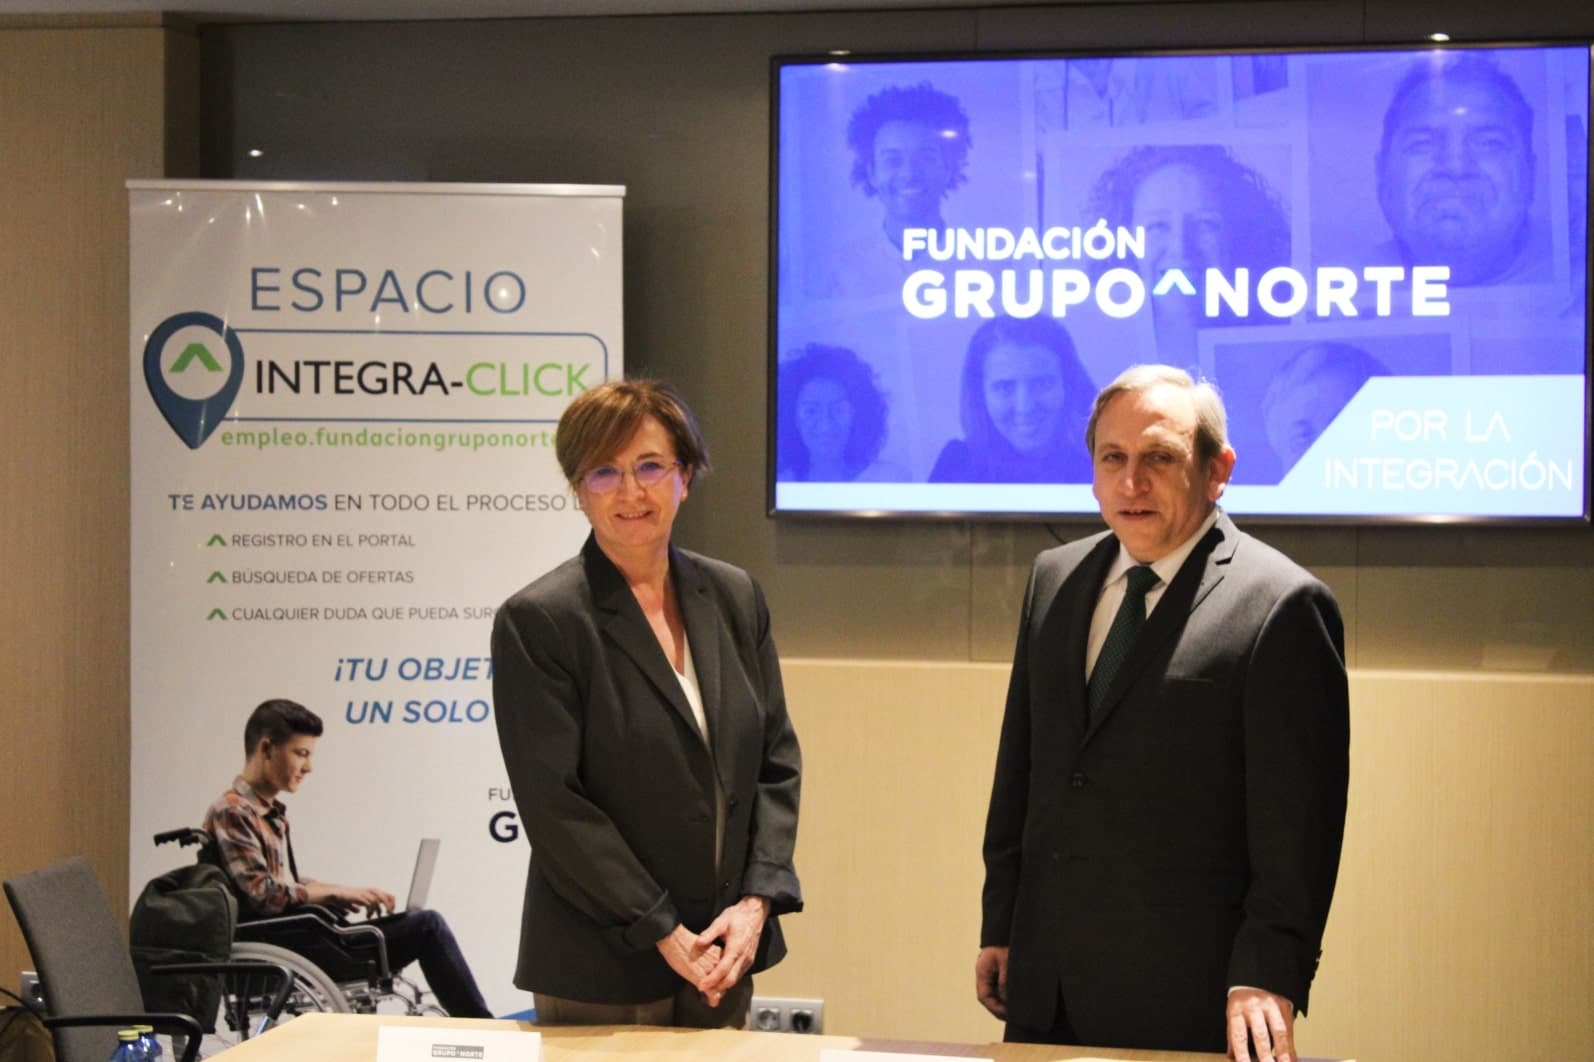 Fundación Grupo Norte crea una oficina digital de empleo e integración